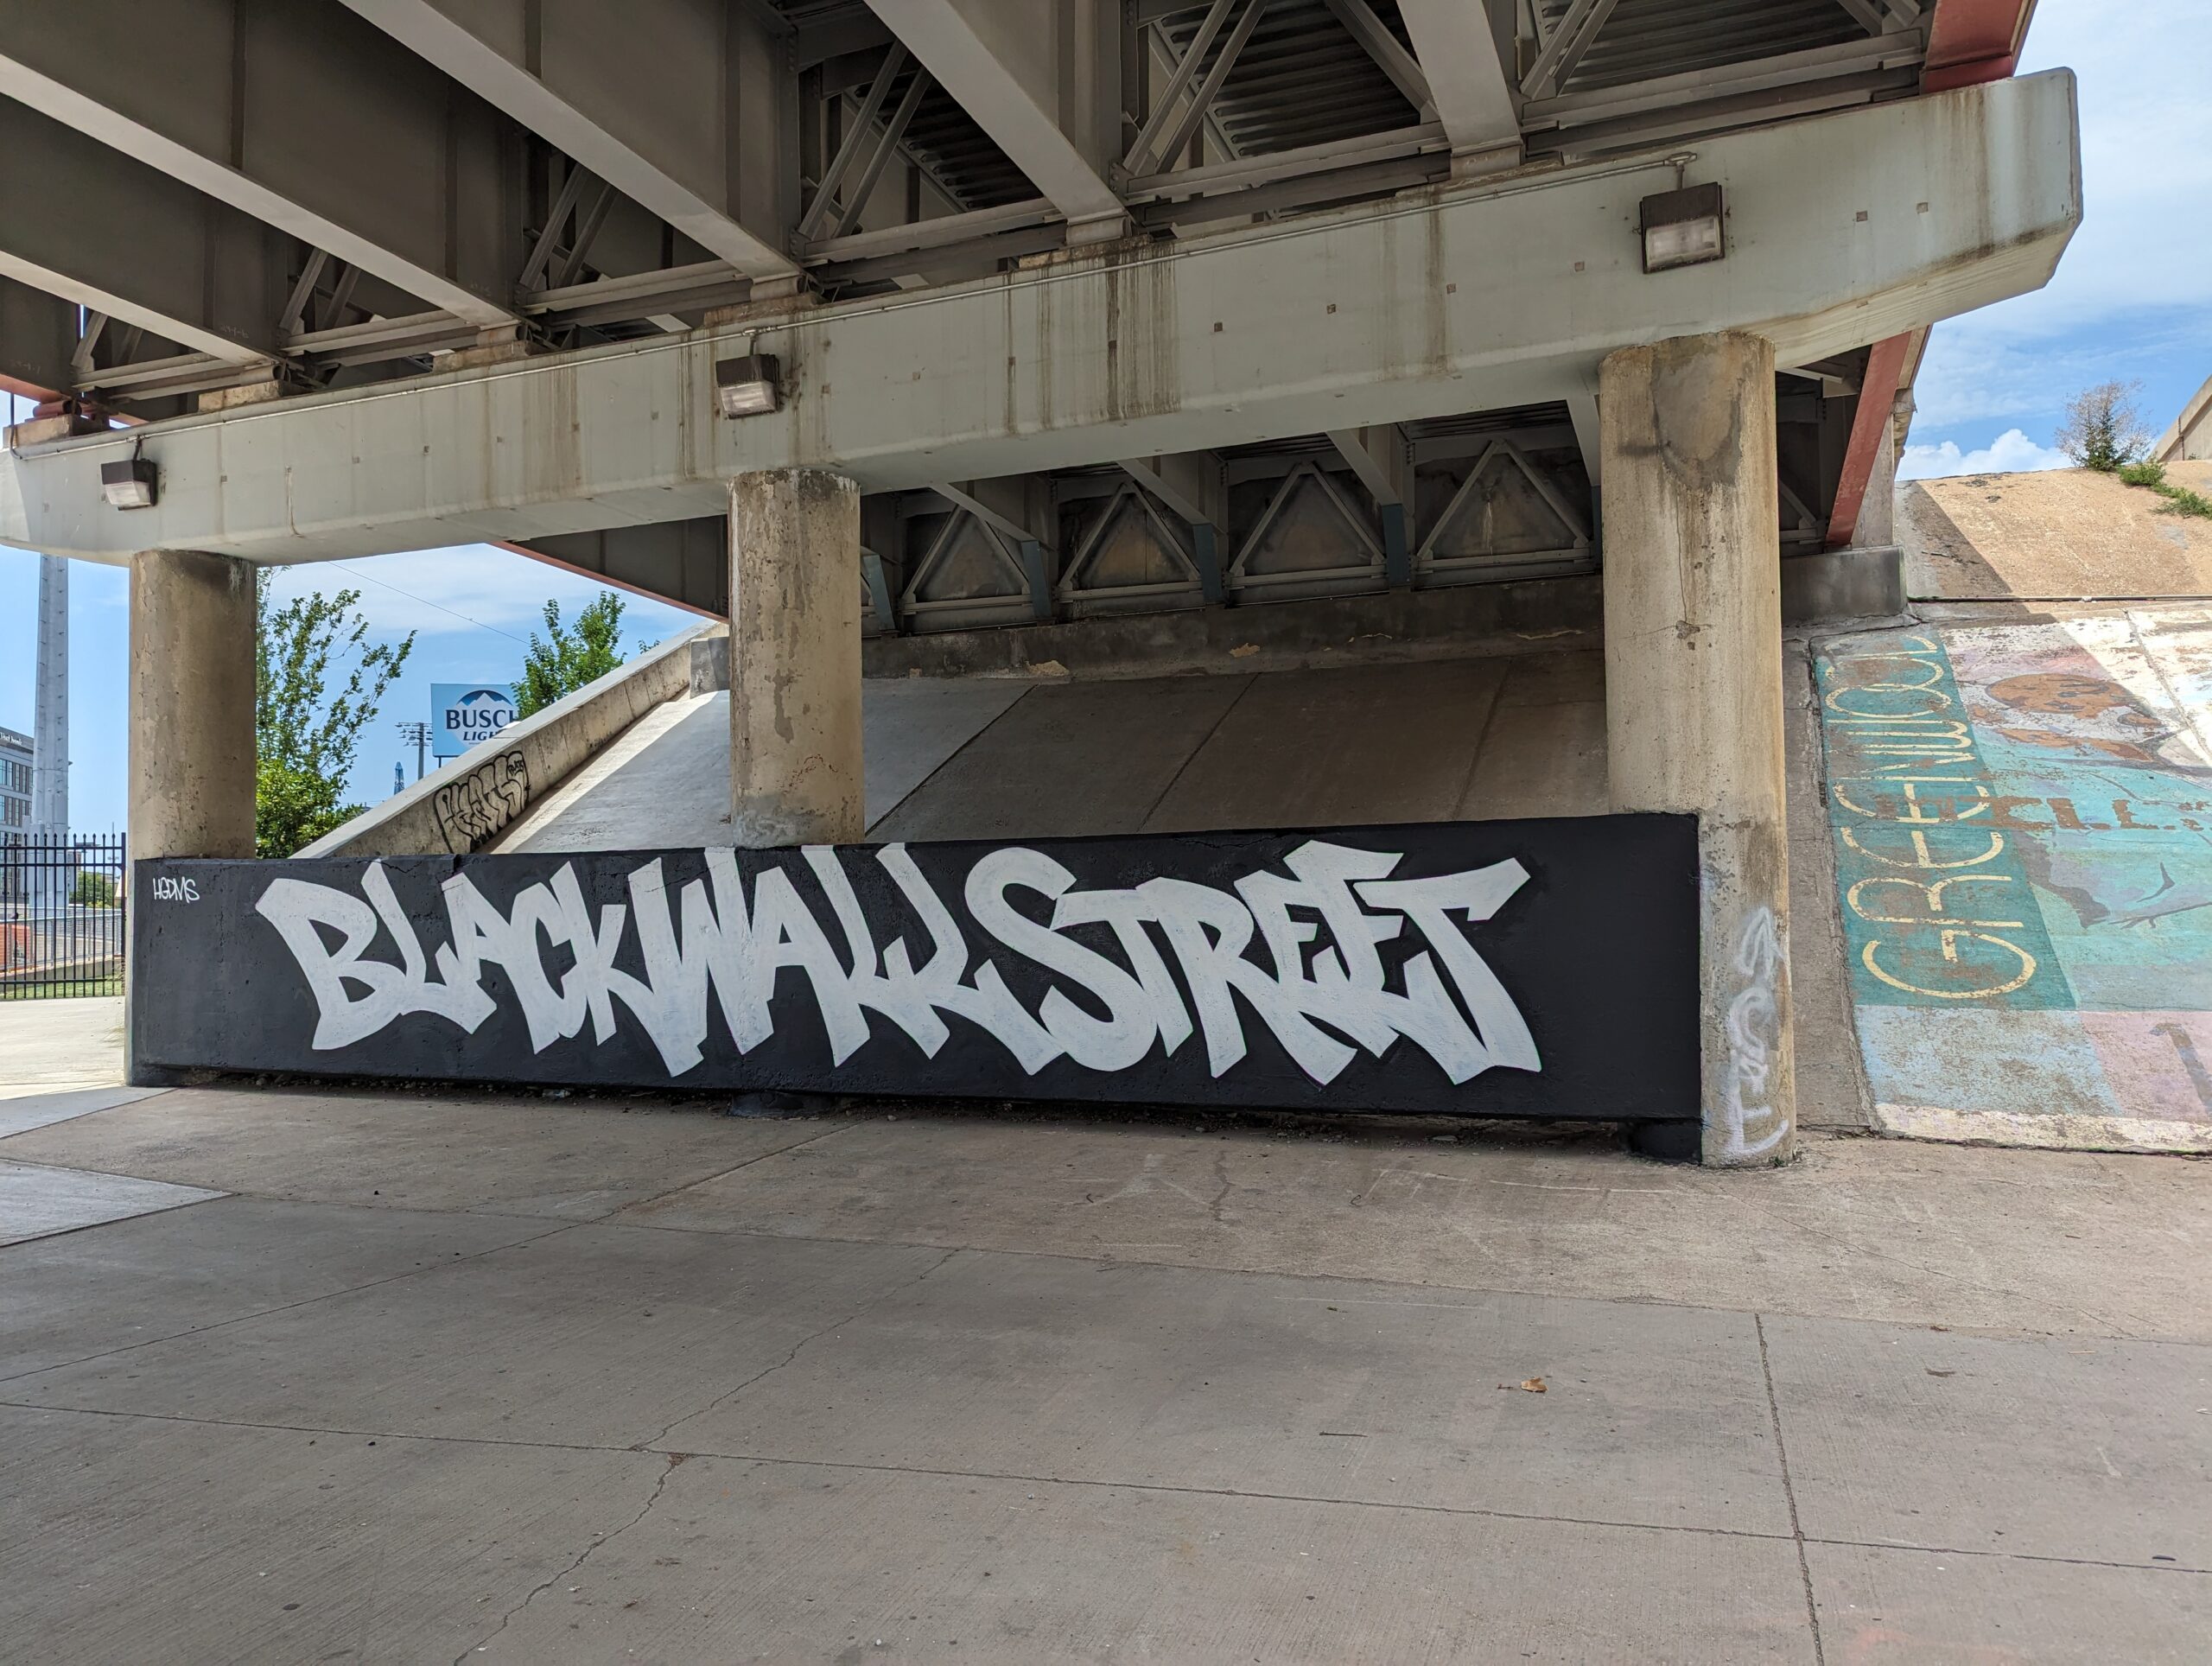 Black Wall Street graffiti